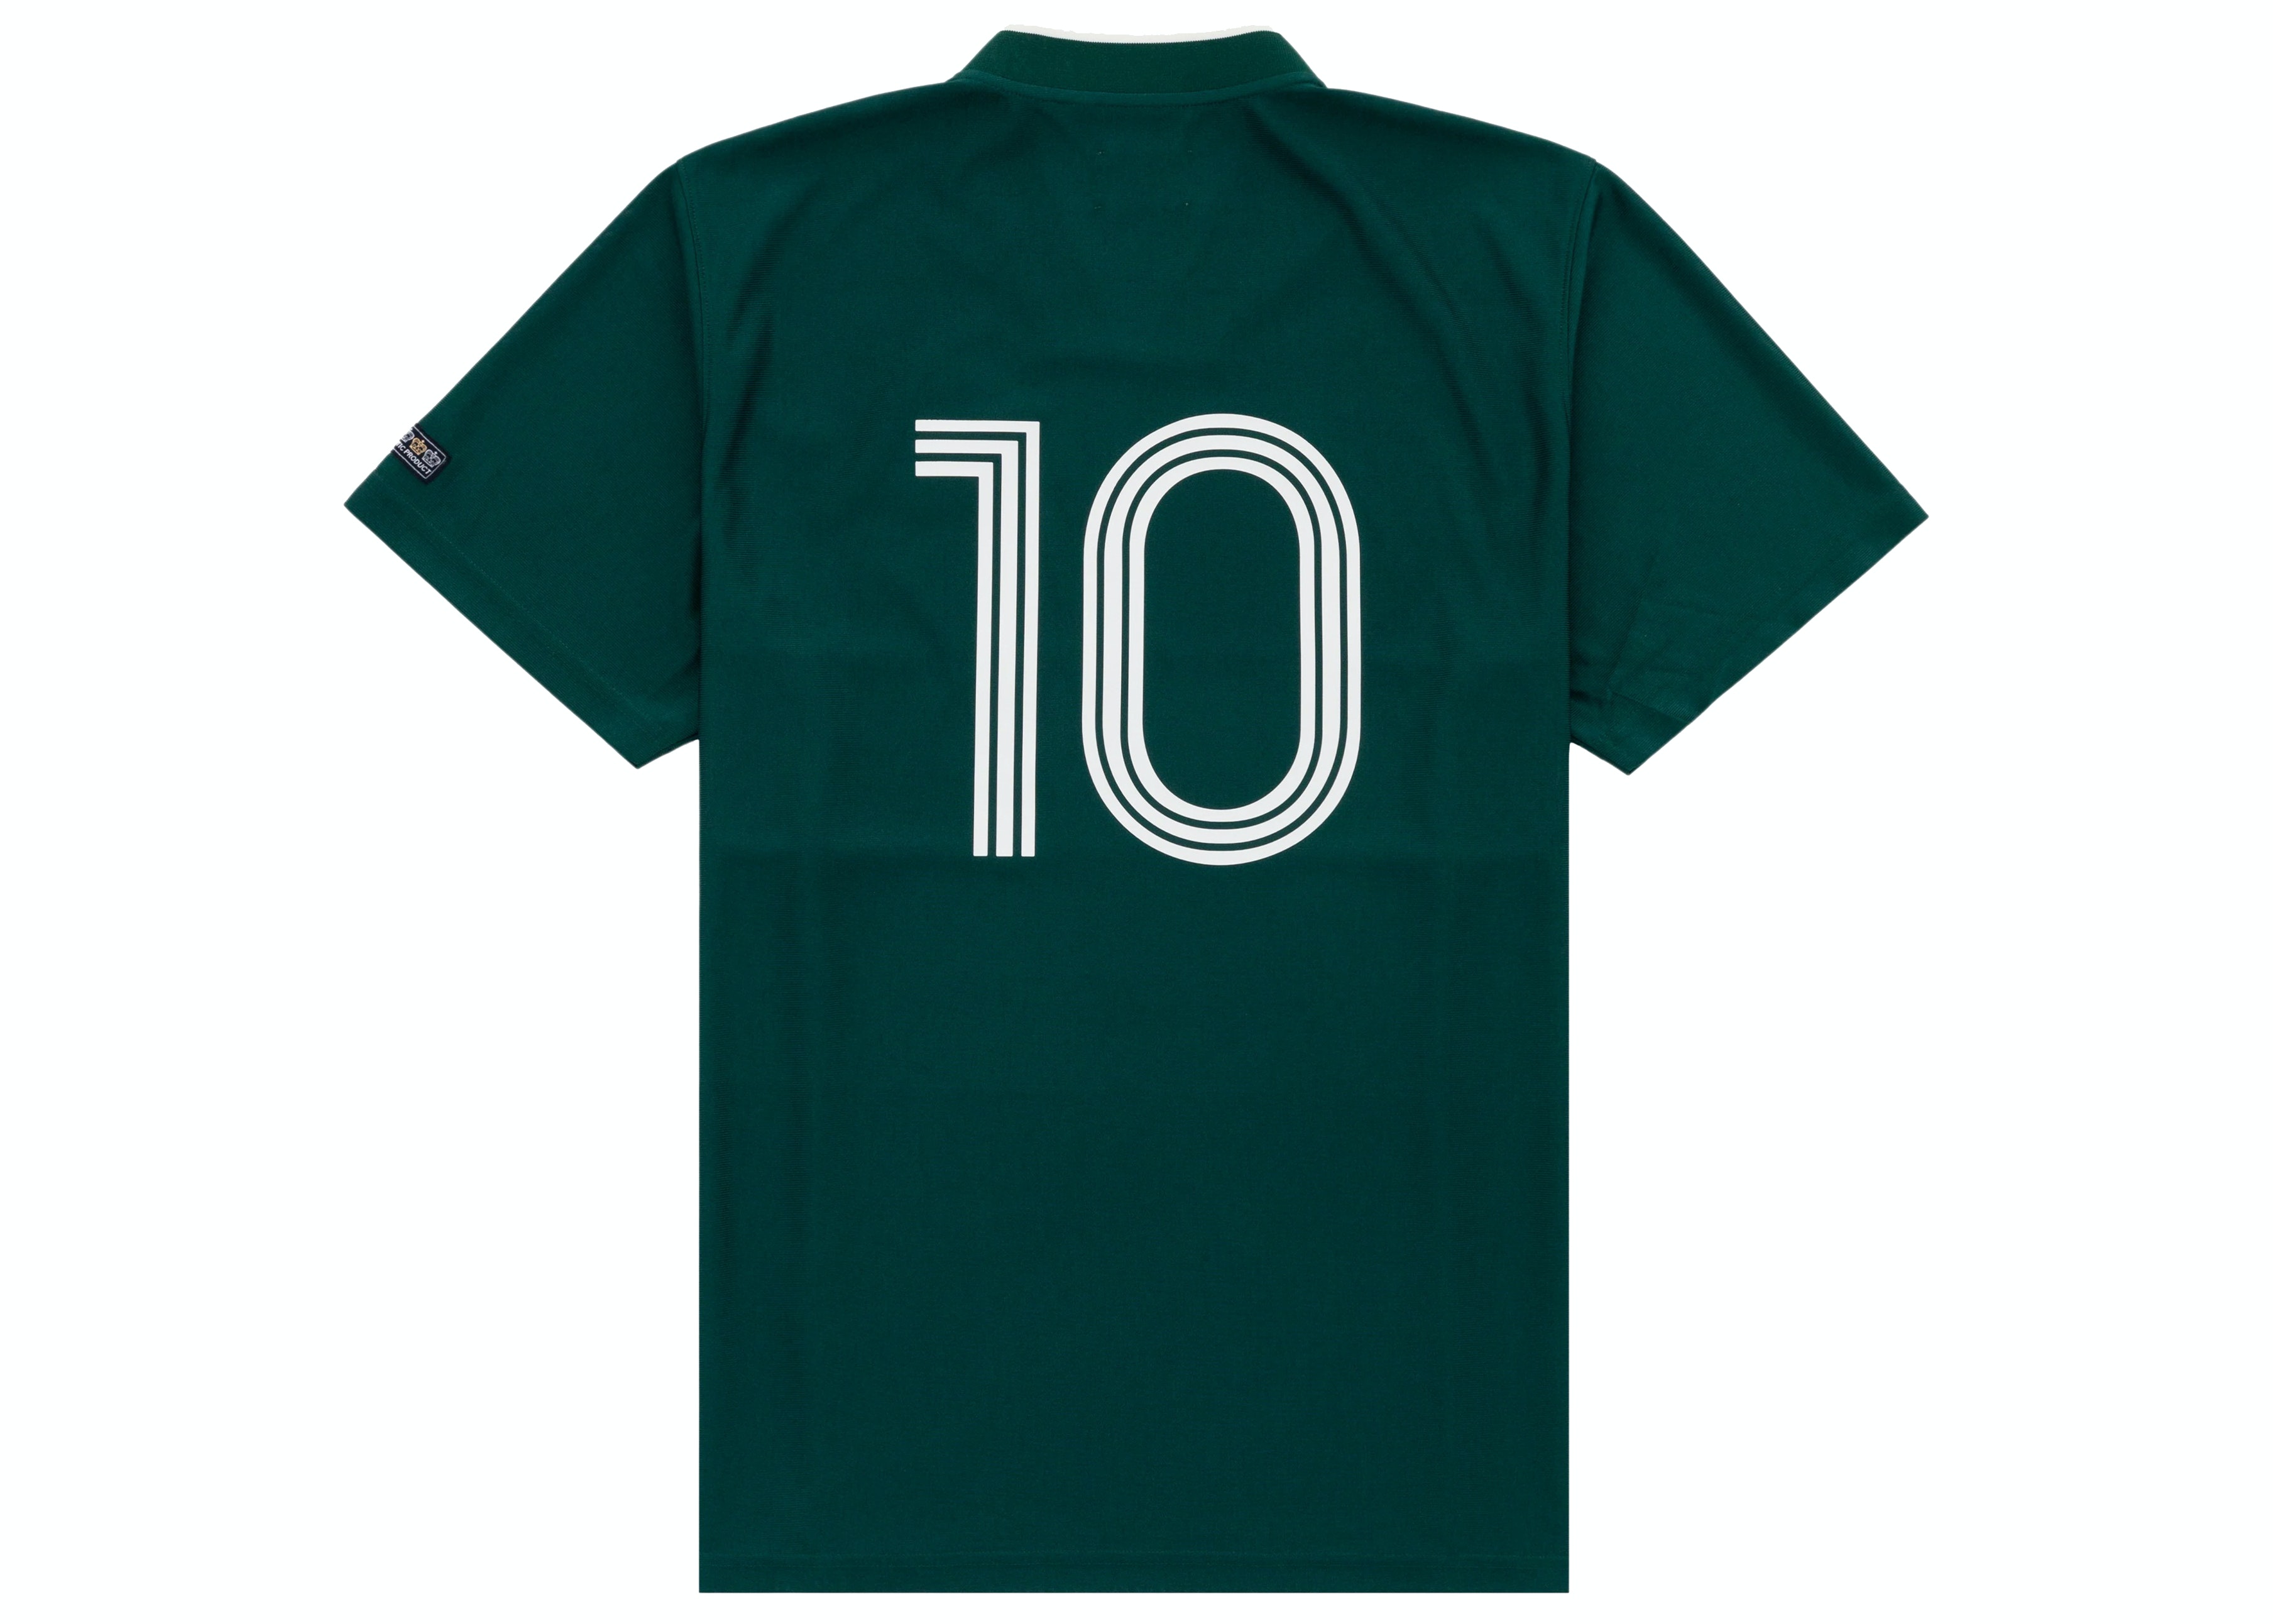 https://d2cva83hdk3bwc.cloudfront.net/aime-leon-dore-team-soccer-jersey-green-2.jpg